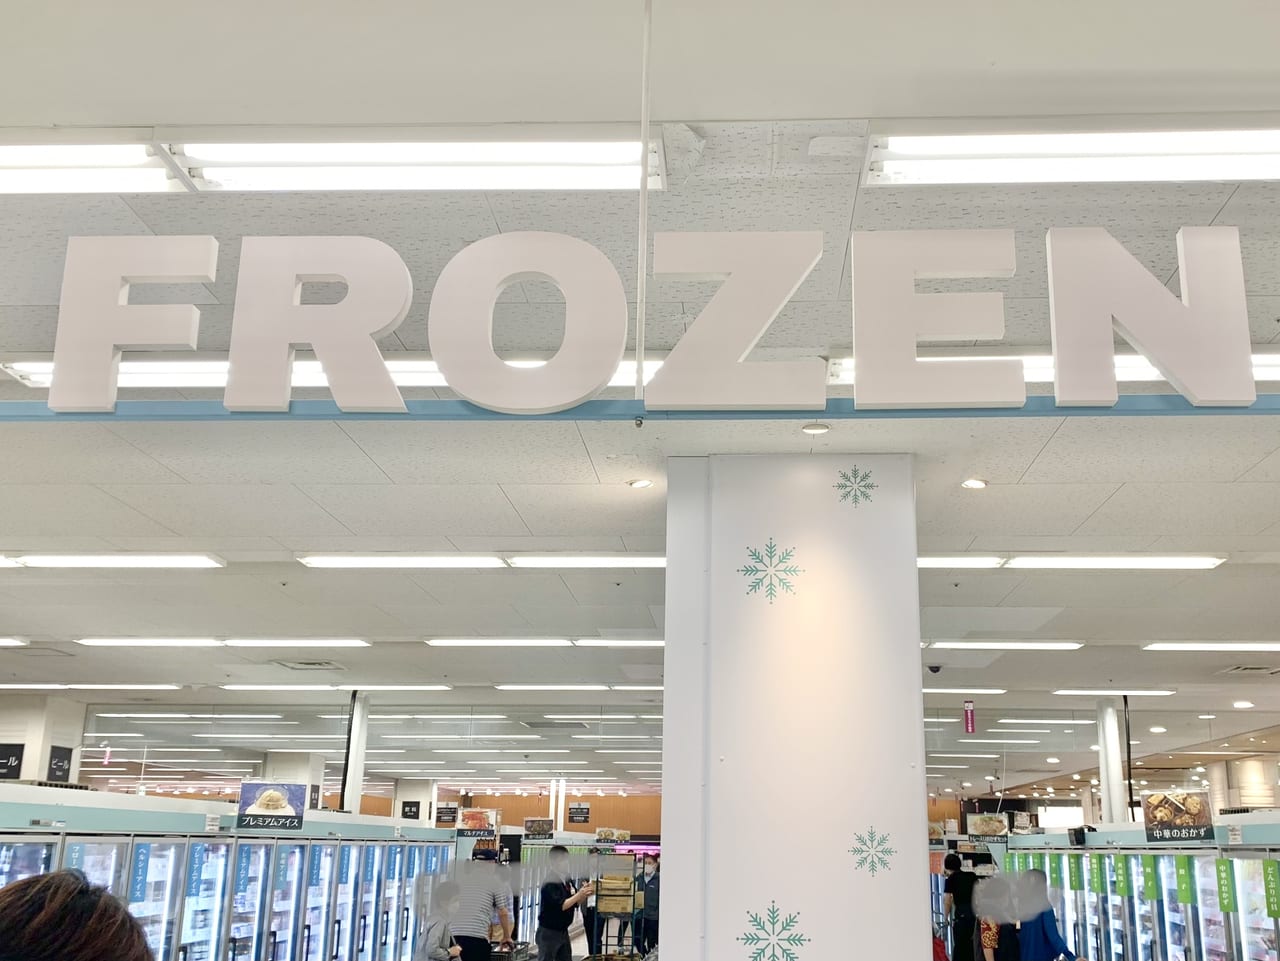 冷凍食品コーナー